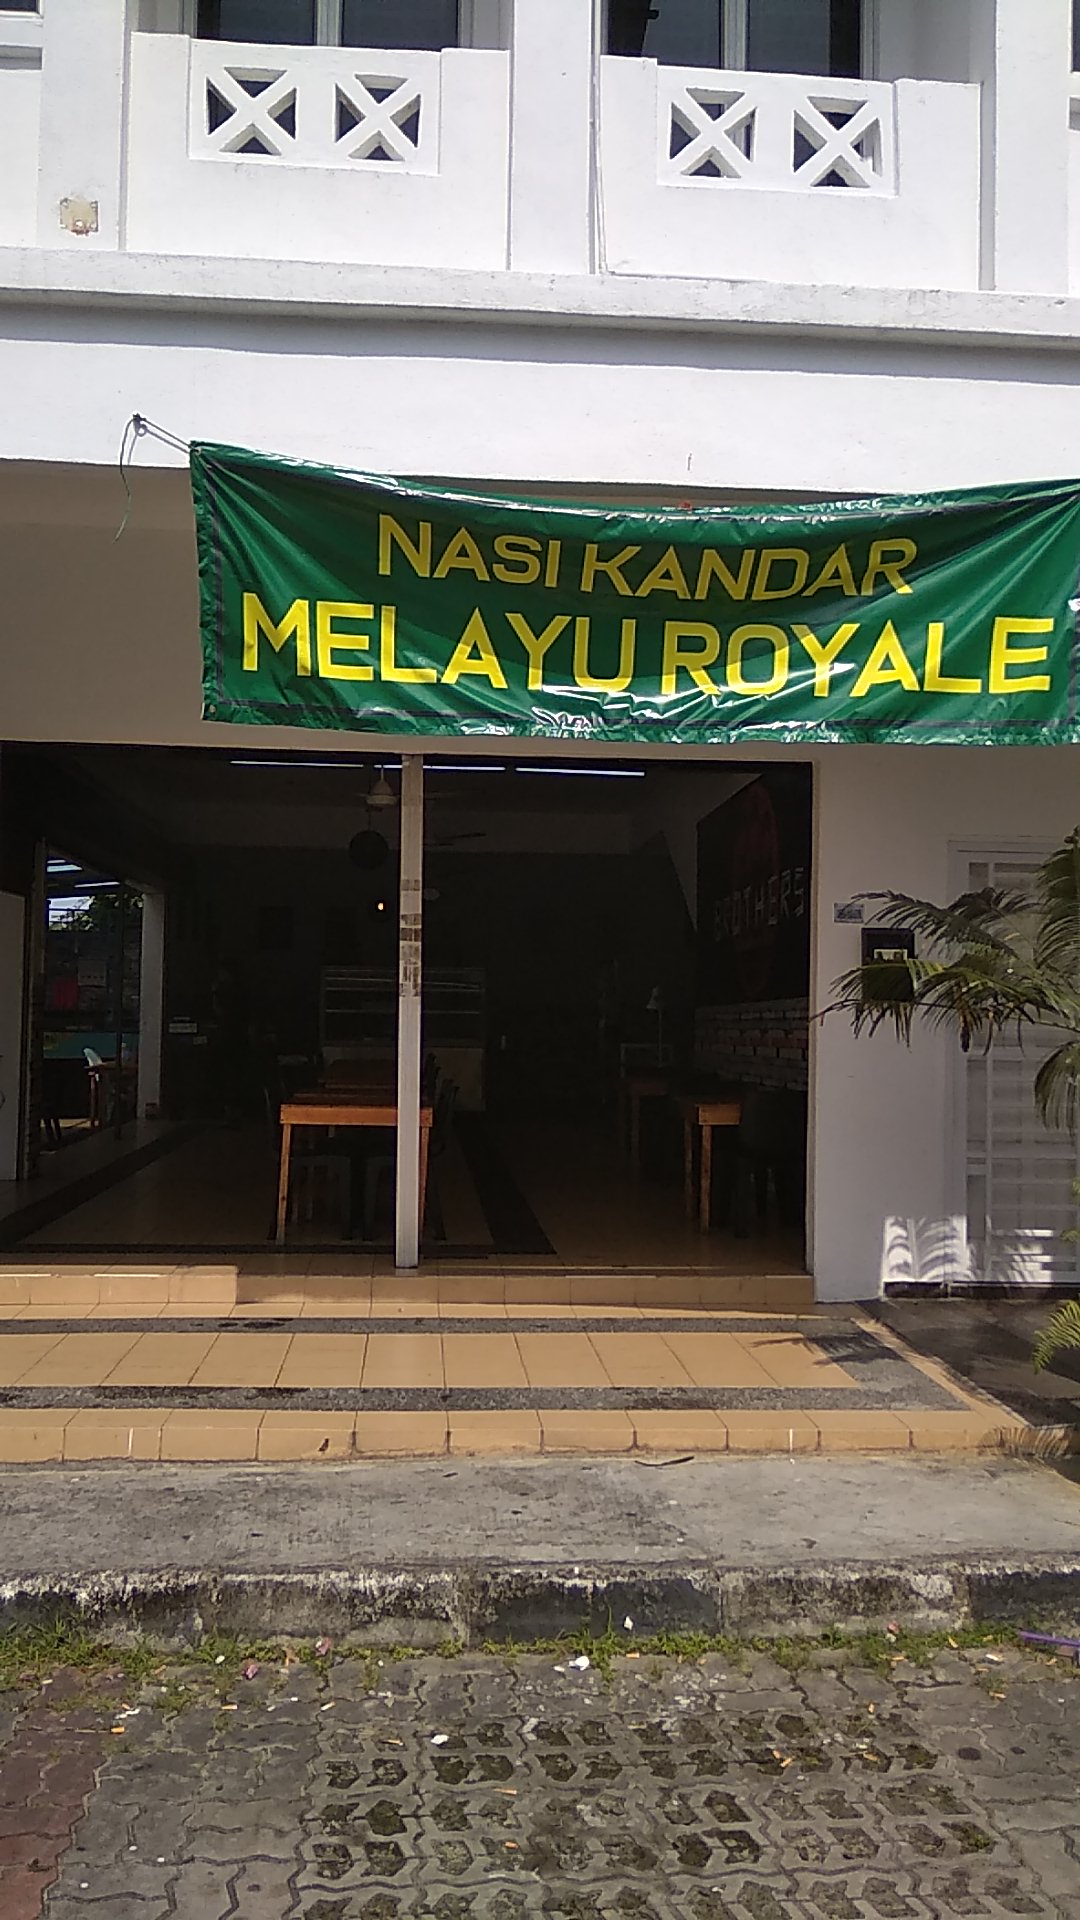 Nasi Kandar Melayu Royale